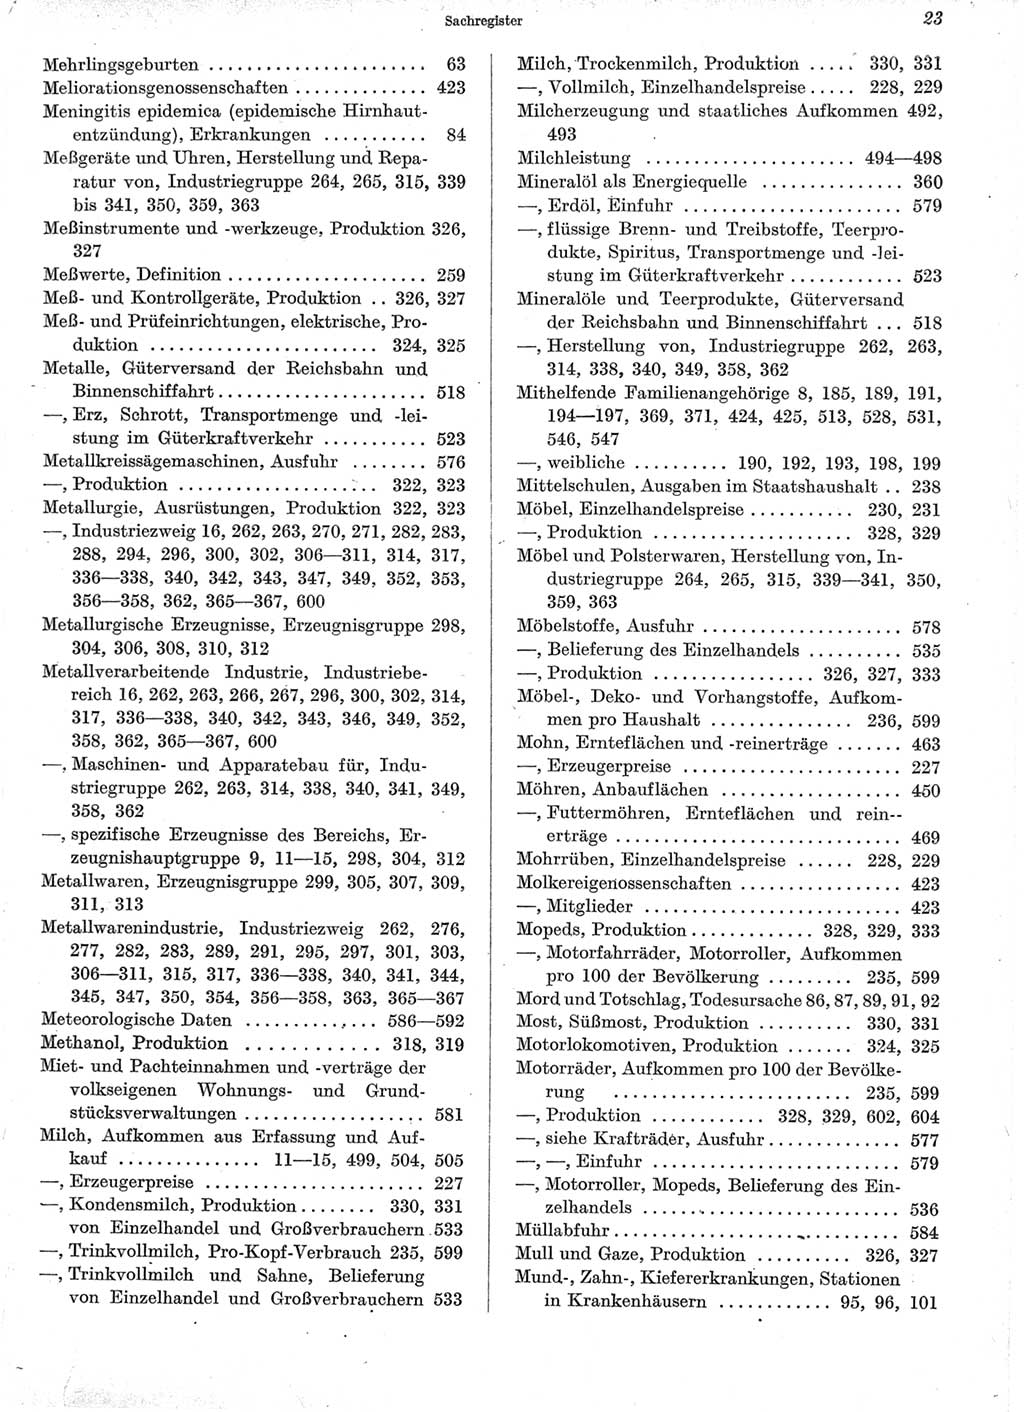 Statistisches Jahrbuch der Deutschen Demokratischen Republik (DDR) 1960-1961, Seite 23 (Stat. Jb. DDR 1960-1961, S. 23)